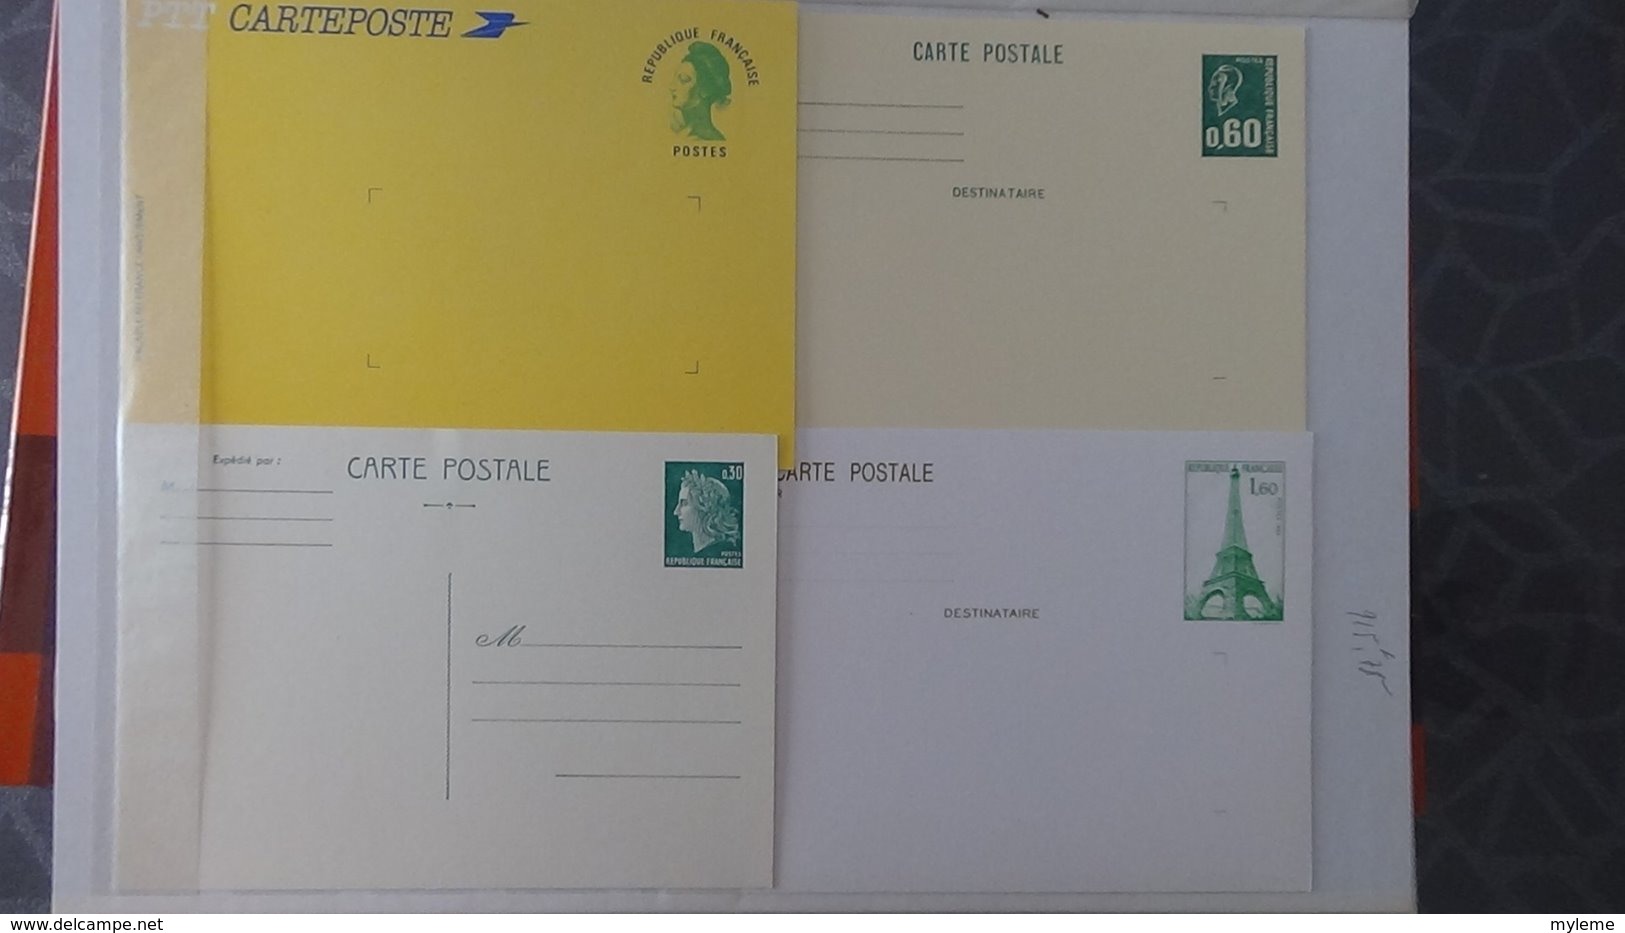 Epreuves du timbres, étapes succésives, imprimerie des timbres, Philexfrance 1999 .... A saisir !!!